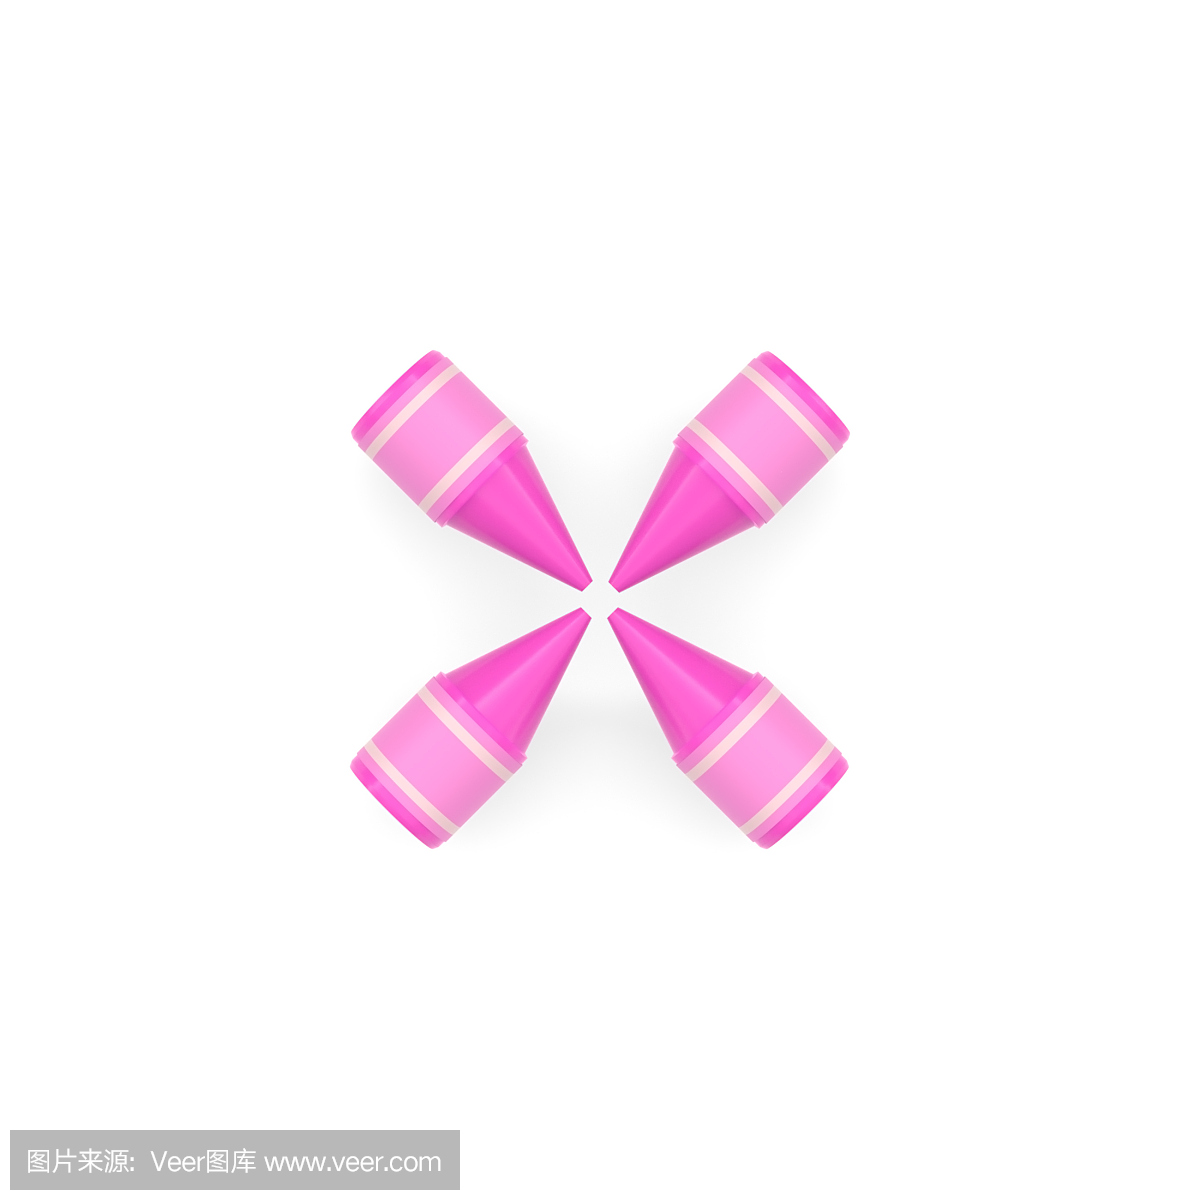 粉红色蜡蜡笔数学运算符号的乘法或交叉在白色